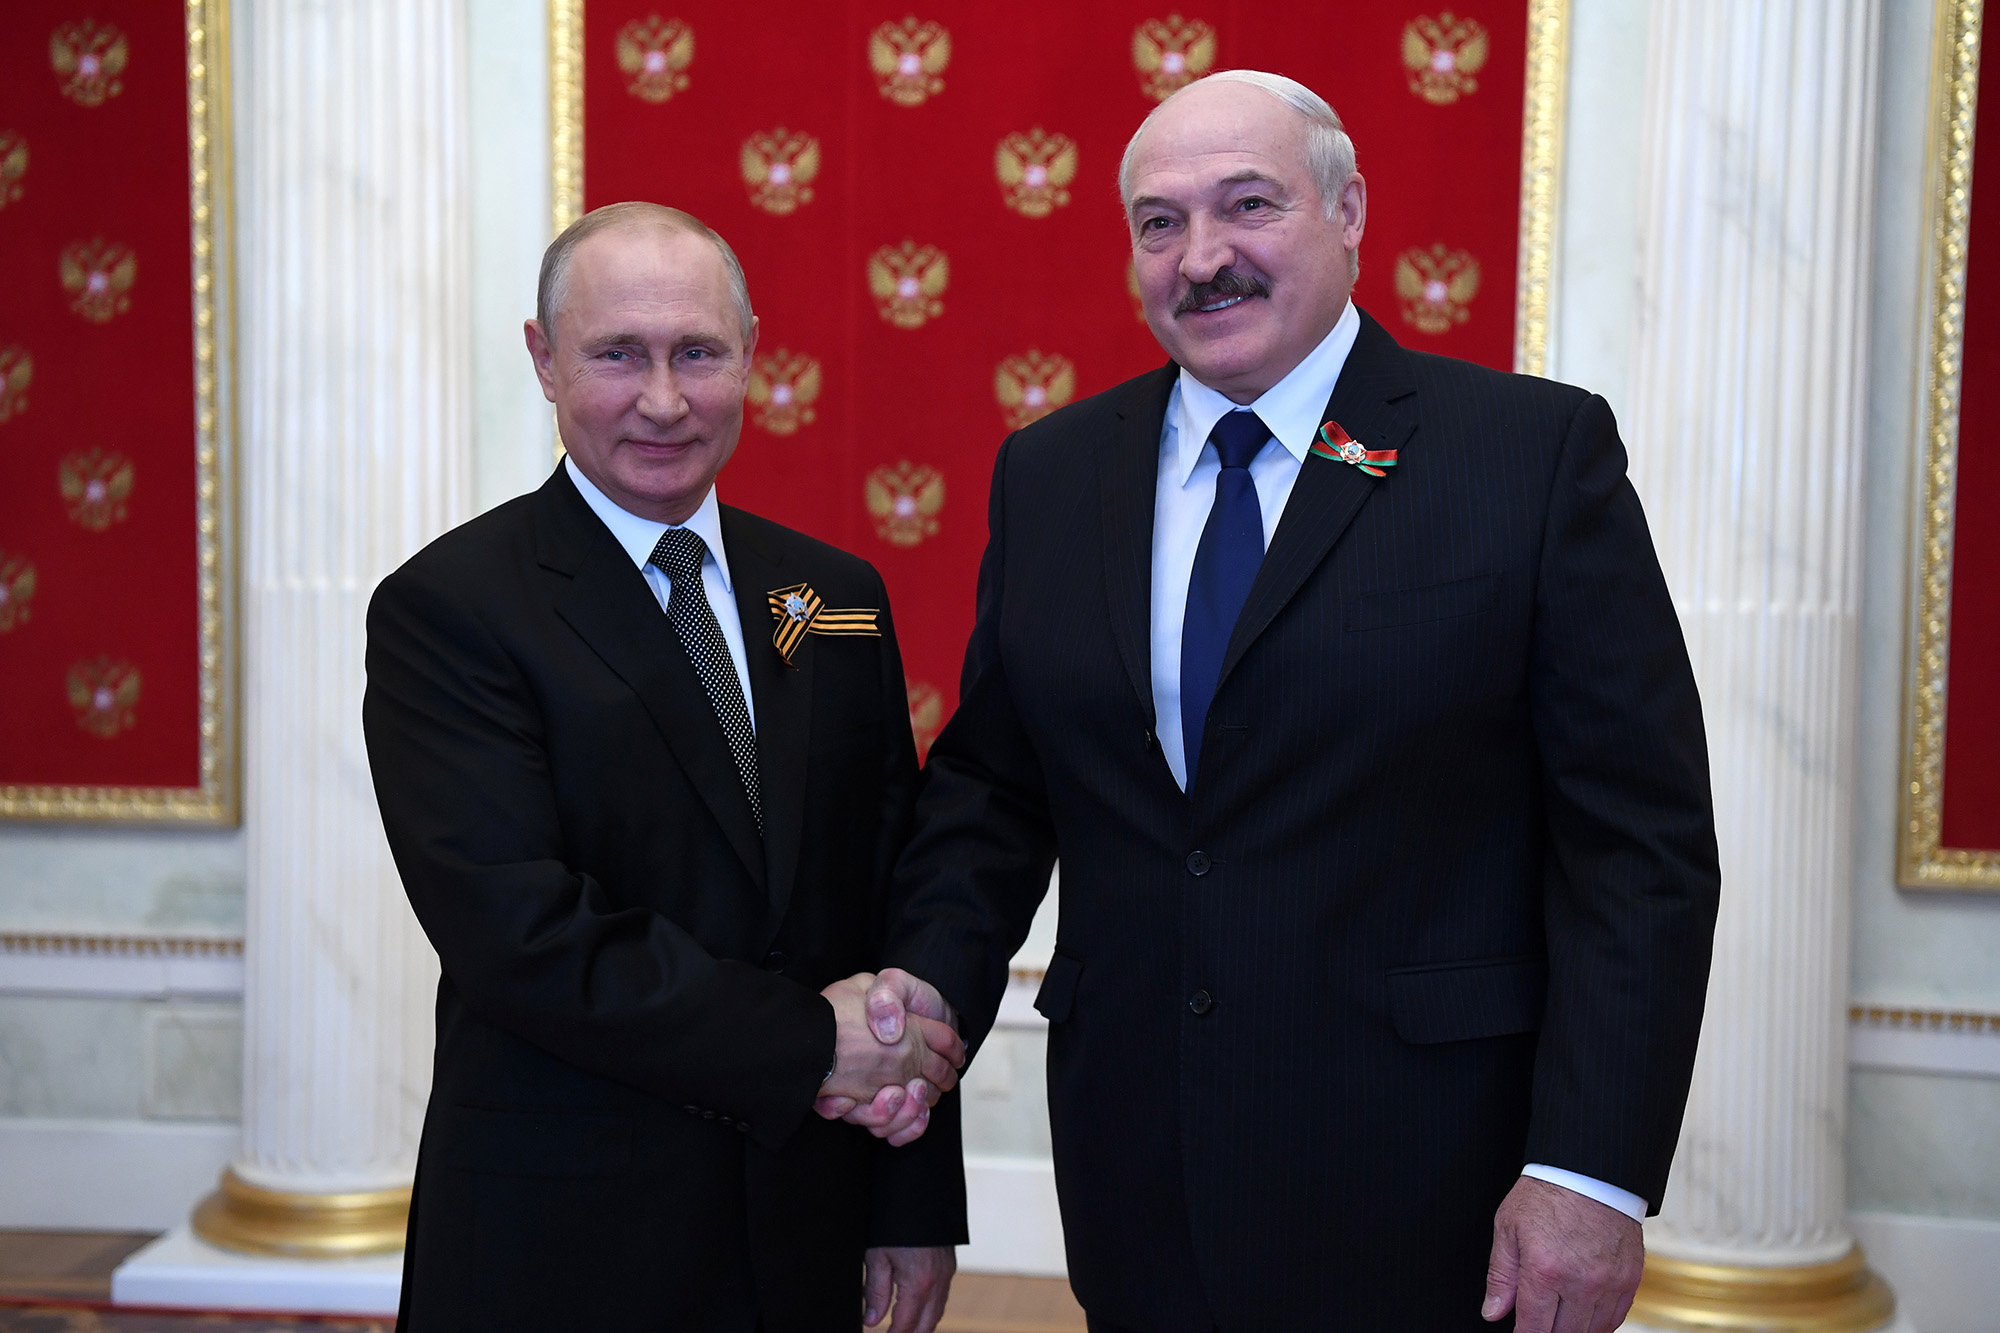 Der russische Präsident Wladimir Putin (L) und der belarussische Präsident Alexander Lukaschenko geben sich während einer Zeremonie am 24. Juni 2020 während einer Zeremonie im Kreml, Moskau, Russland, die Hand.